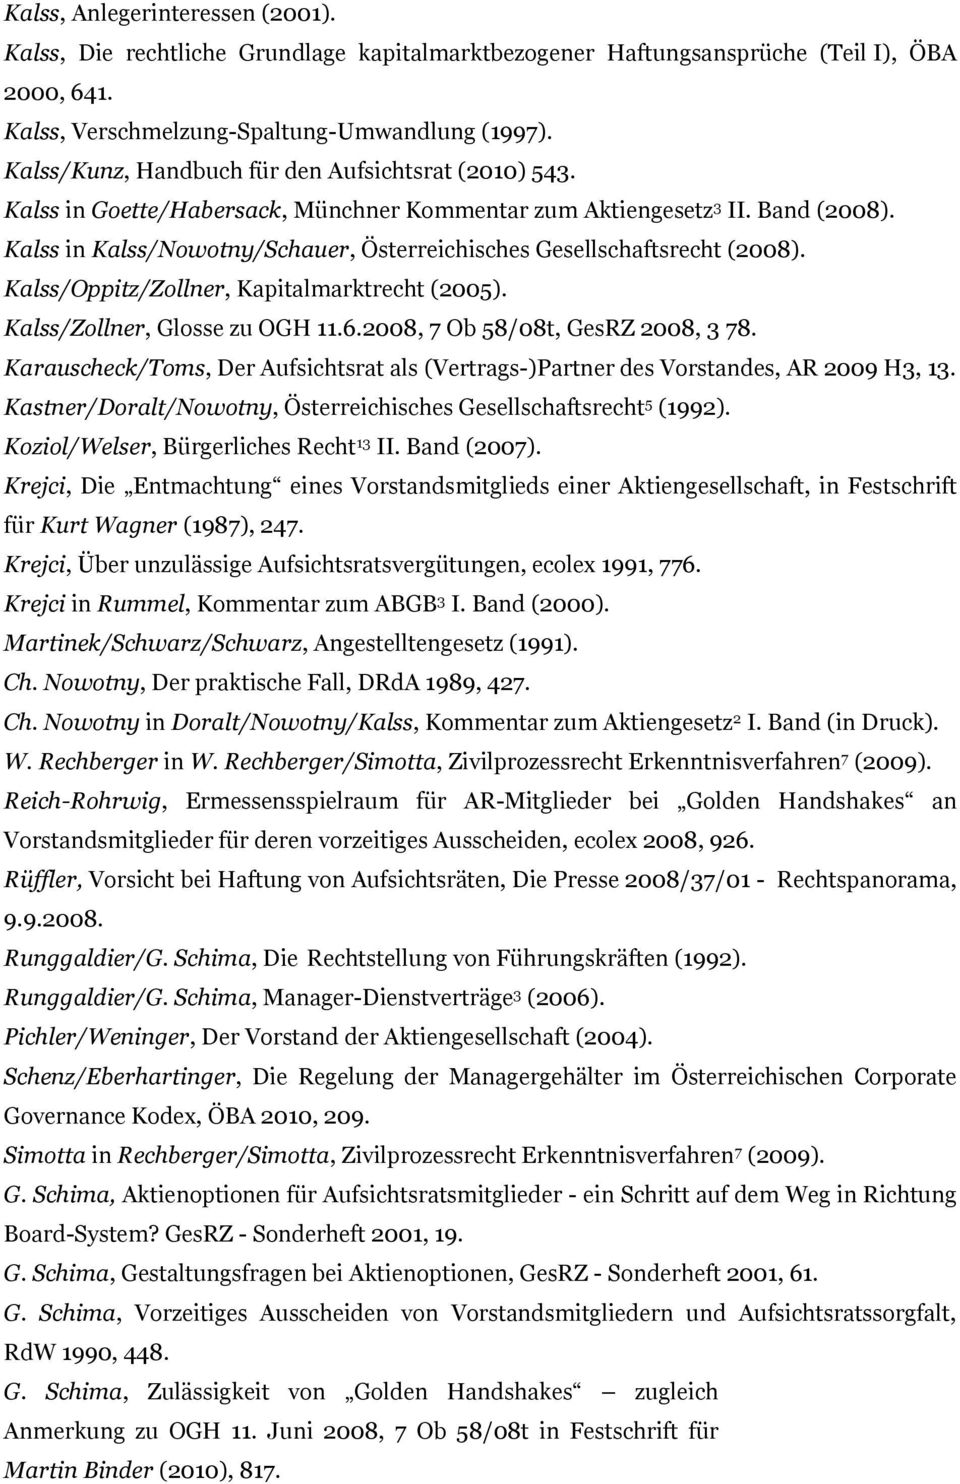 Kalss in Kalss/Nowotny/Schauer, Österreichisches Gesellschaftsrecht (2008). Kalss/Oppitz/Zollner, Kapitalmarktrecht (2005). Kalss/Zollner, Glosse zu OGH 11.6.2008, 7 Ob 58/08t, GesRZ 2008, 3 78.